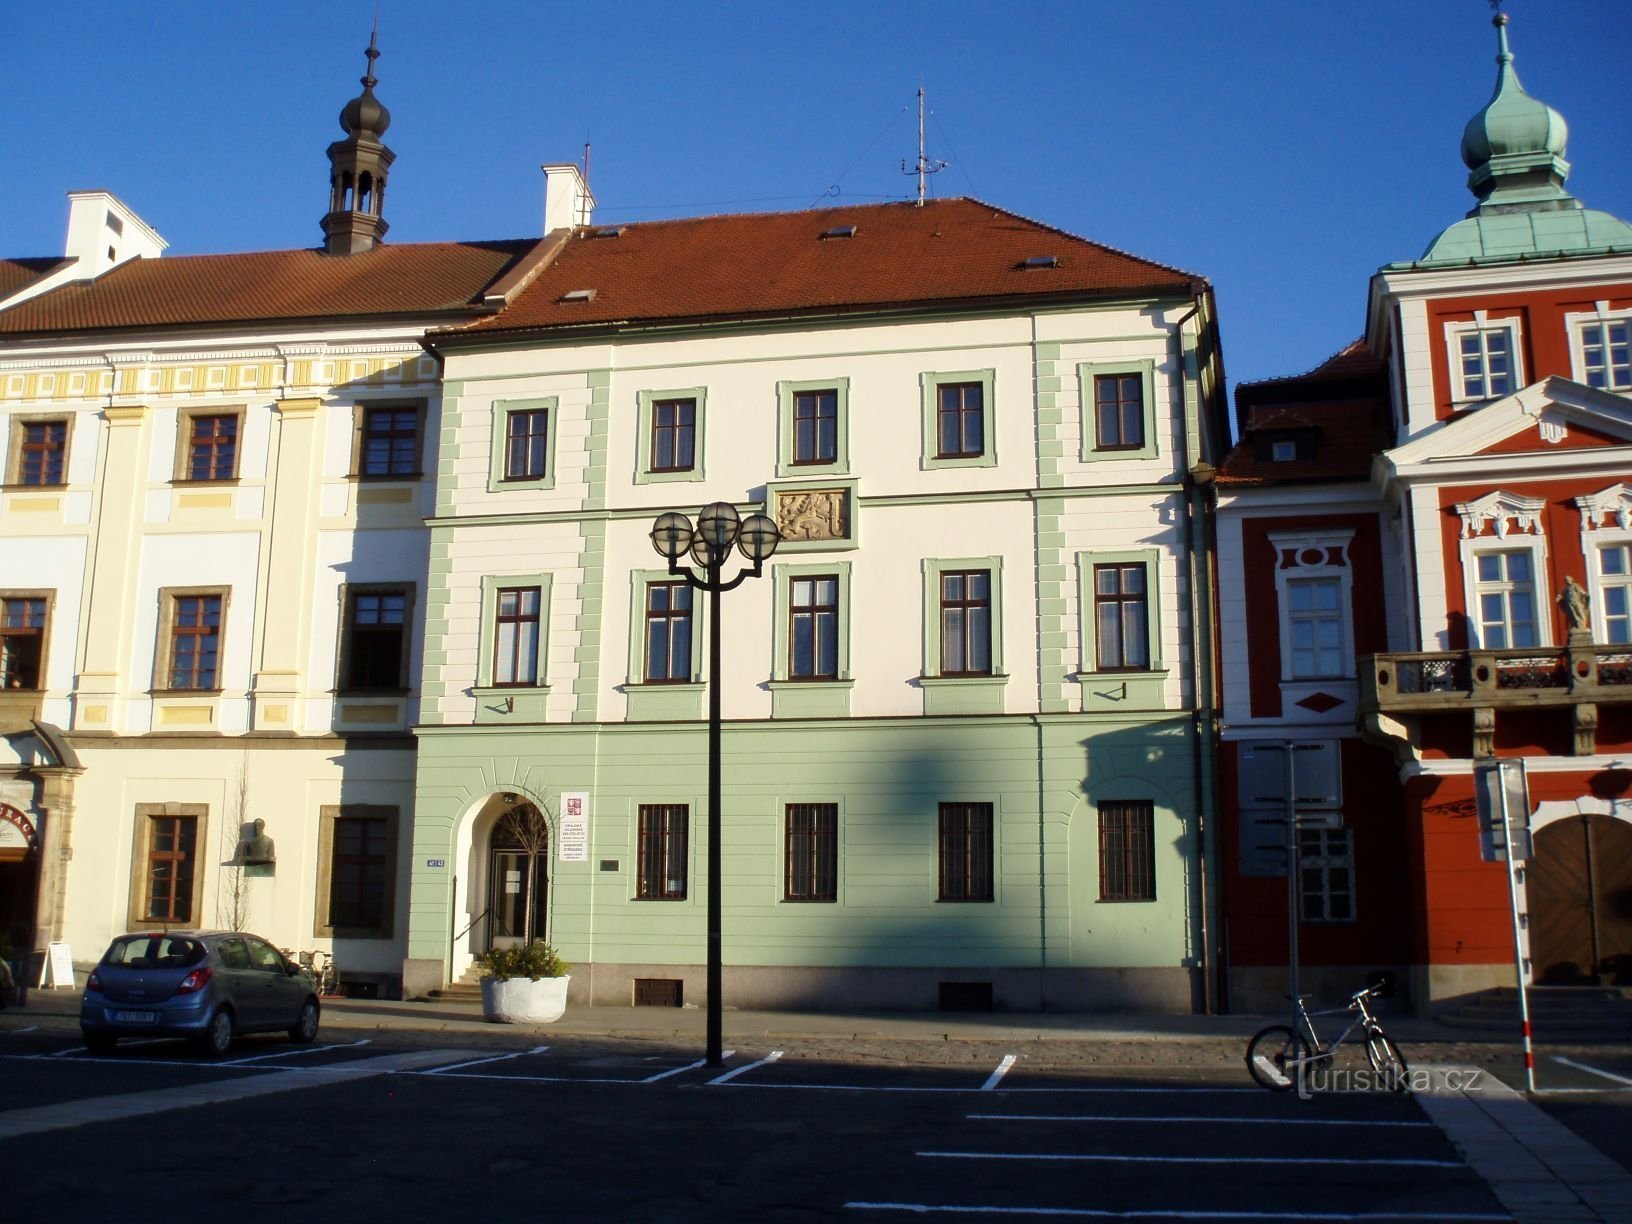 Velké náměstí čp. 33 (Hradec Králové, 25.4.2012)